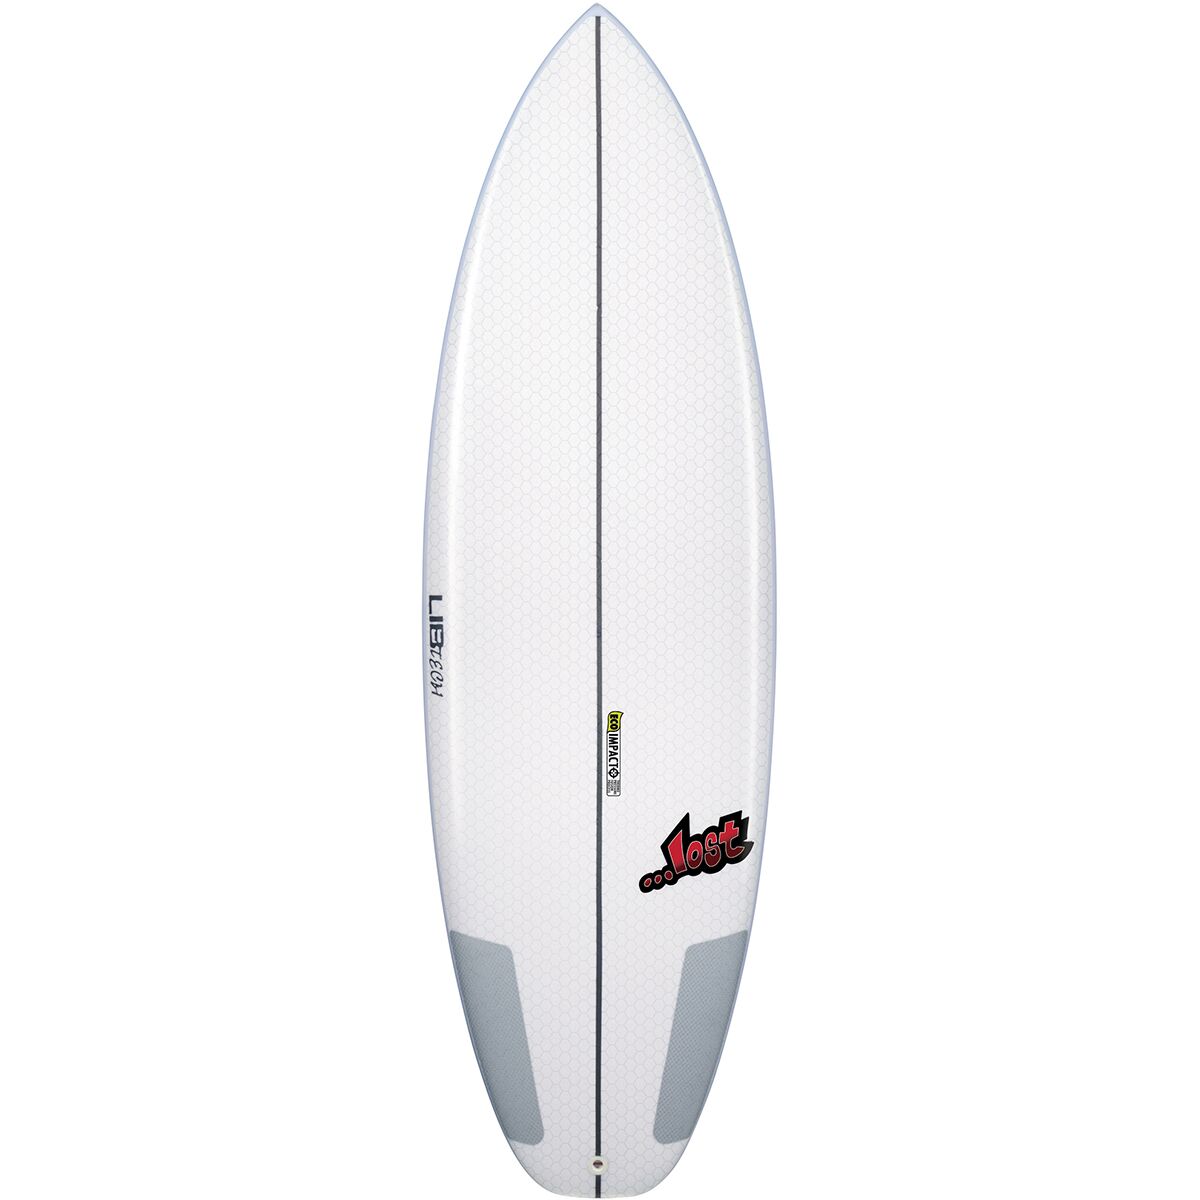 Lib Technologies x Lost Puddle Jumper HP Surfboard